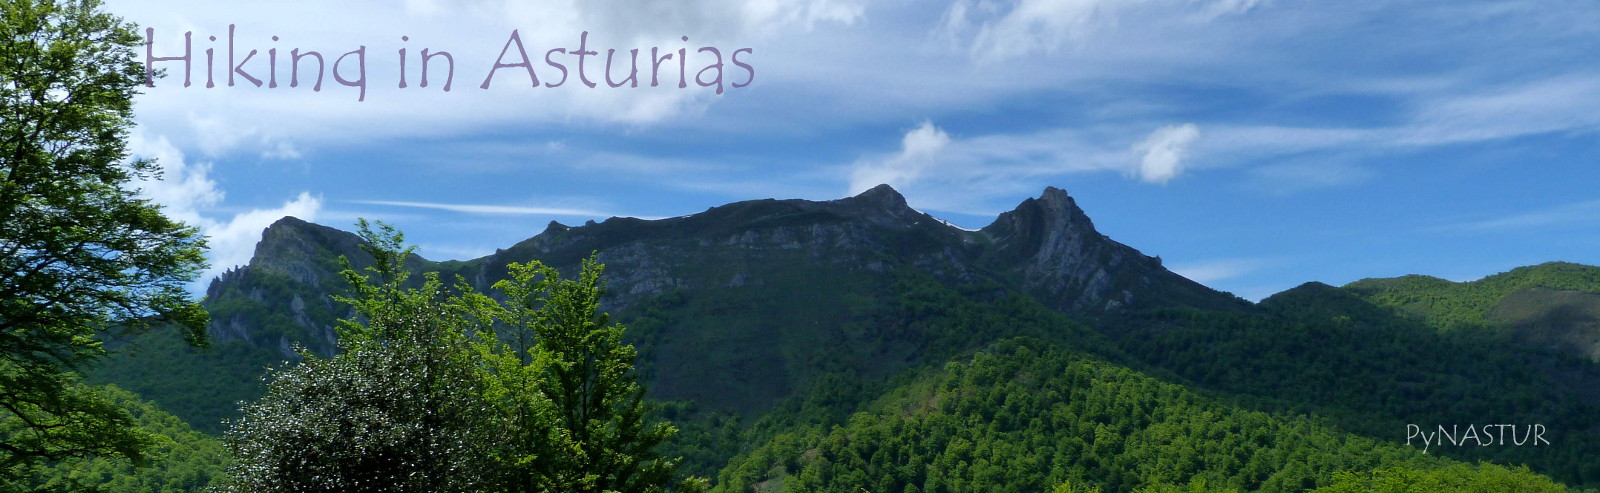 Hiking and Walking in Asturias Spain